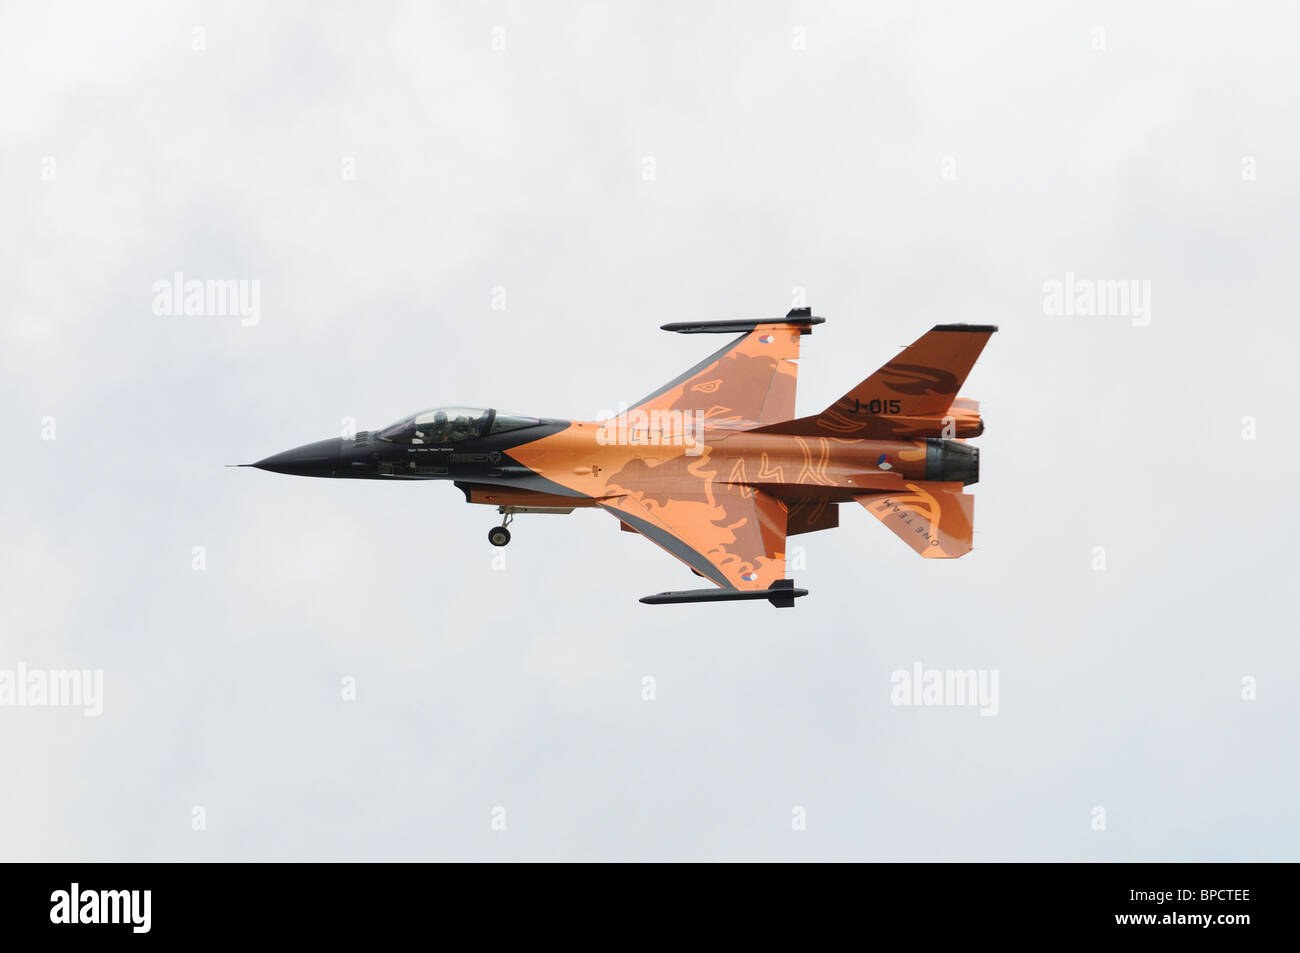 Dynamique générale F-16AM Fighting Falcon de 322/323 d'escadrons de la Force aérienne royale des Pays-Bas Leeuwarden répète son affichage à l'e Banque D'Images